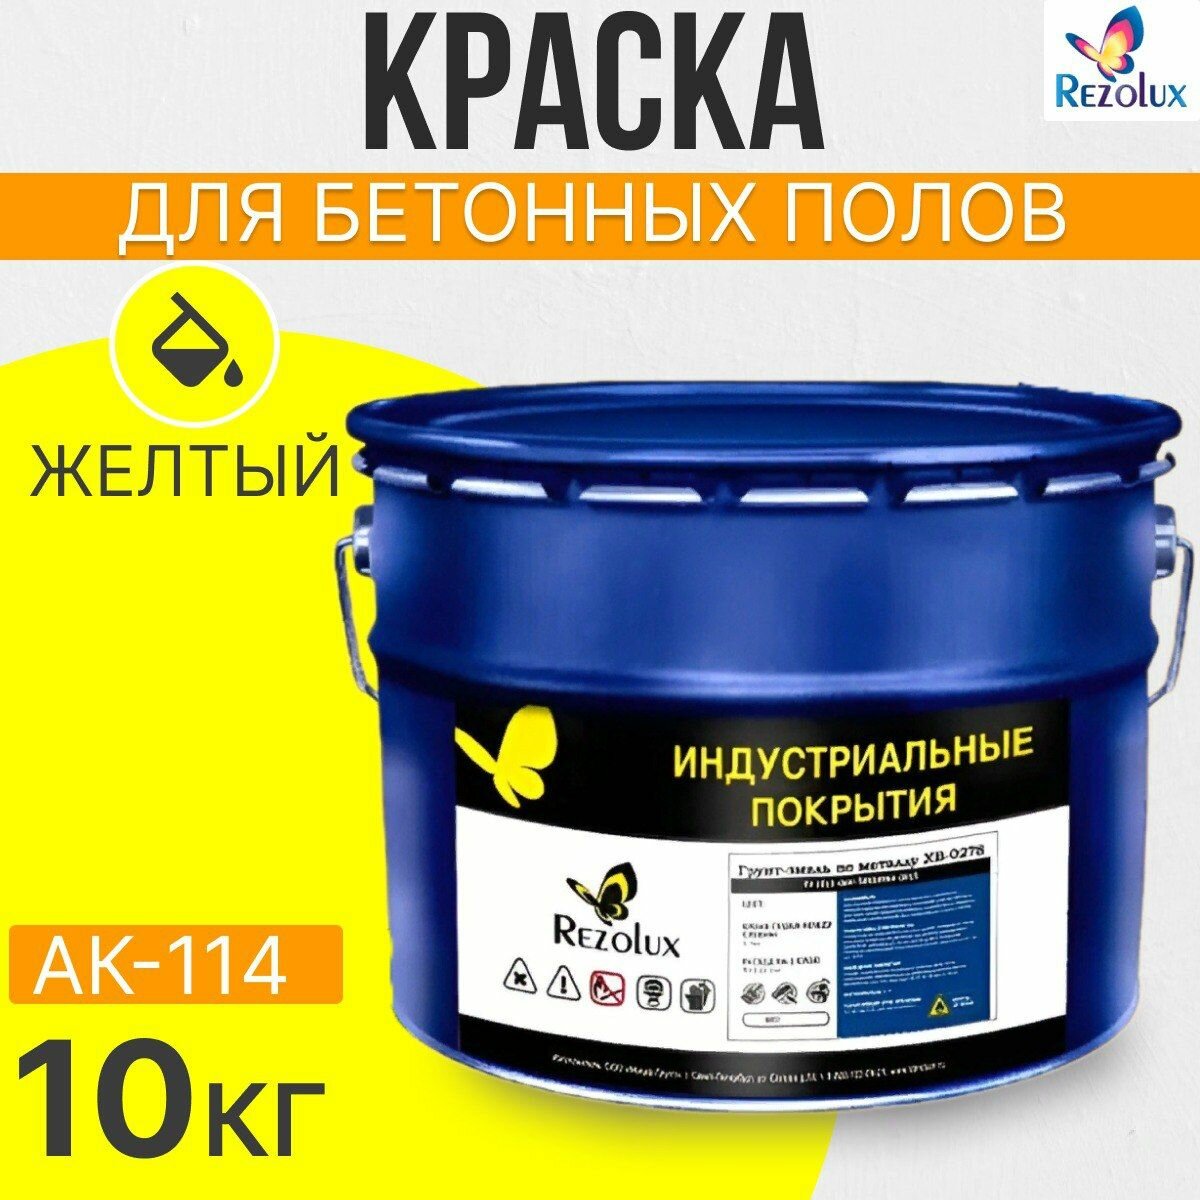 Краска для бетонных полов 10 кг, Rezolux АК-114, акриловая, влагостойкая, моющаяся, цвет желтый.